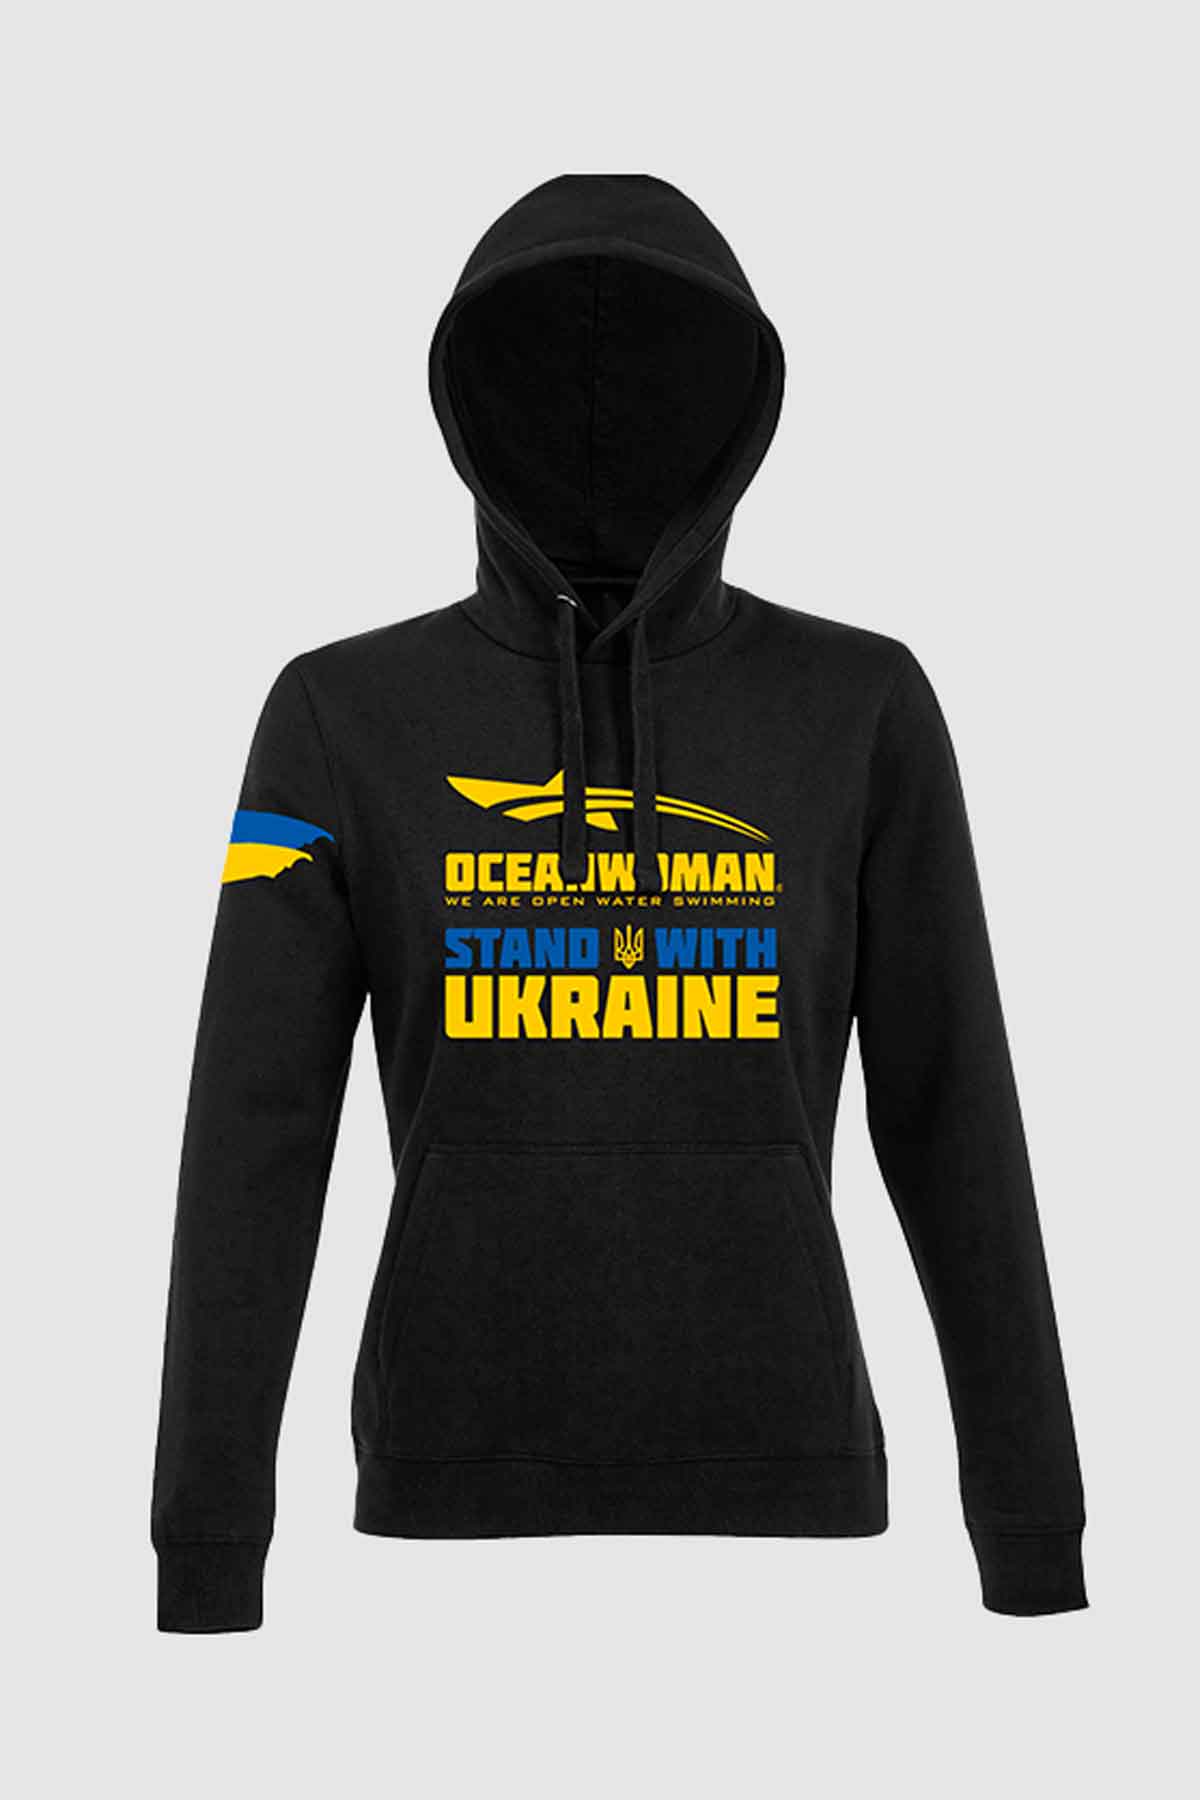 oceanwoman stand with ukraine hoodie black women